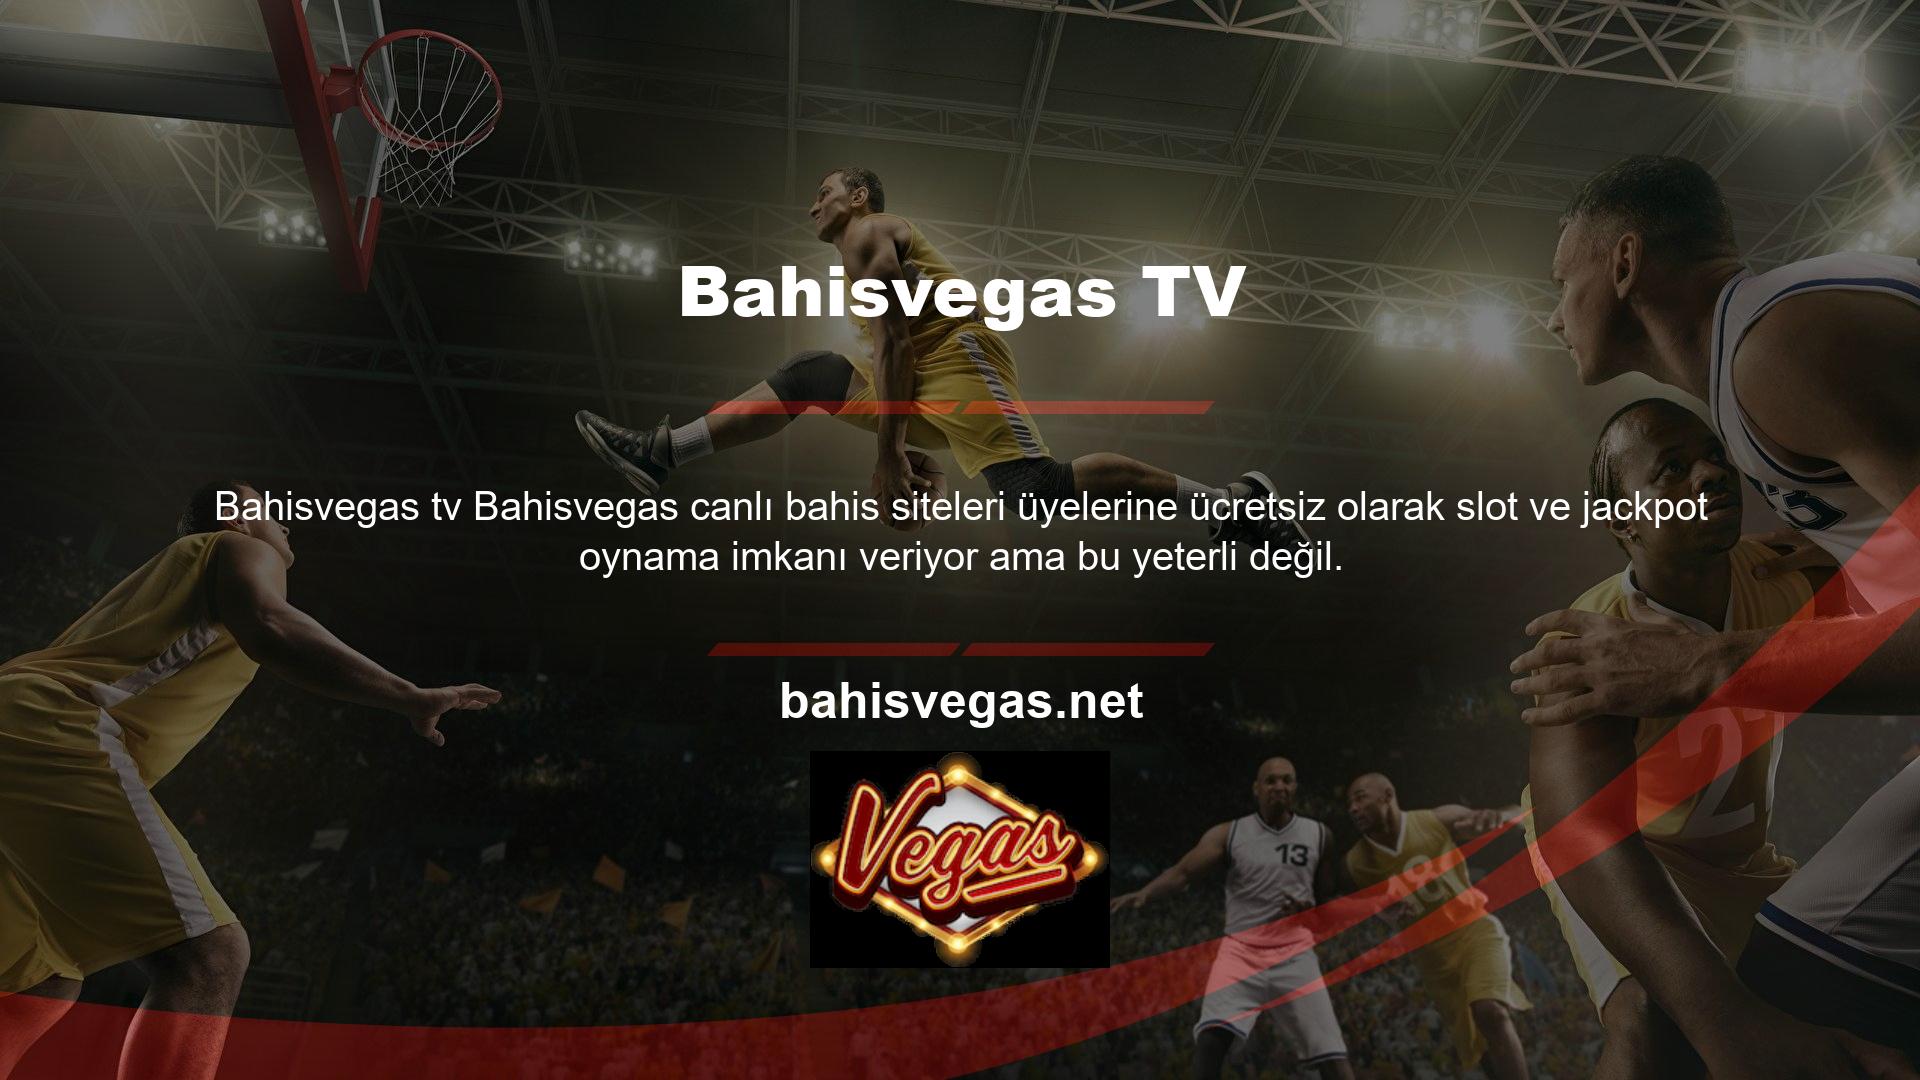 Bahisvegas TV İzle uygulaması tamamen ücretsizdir